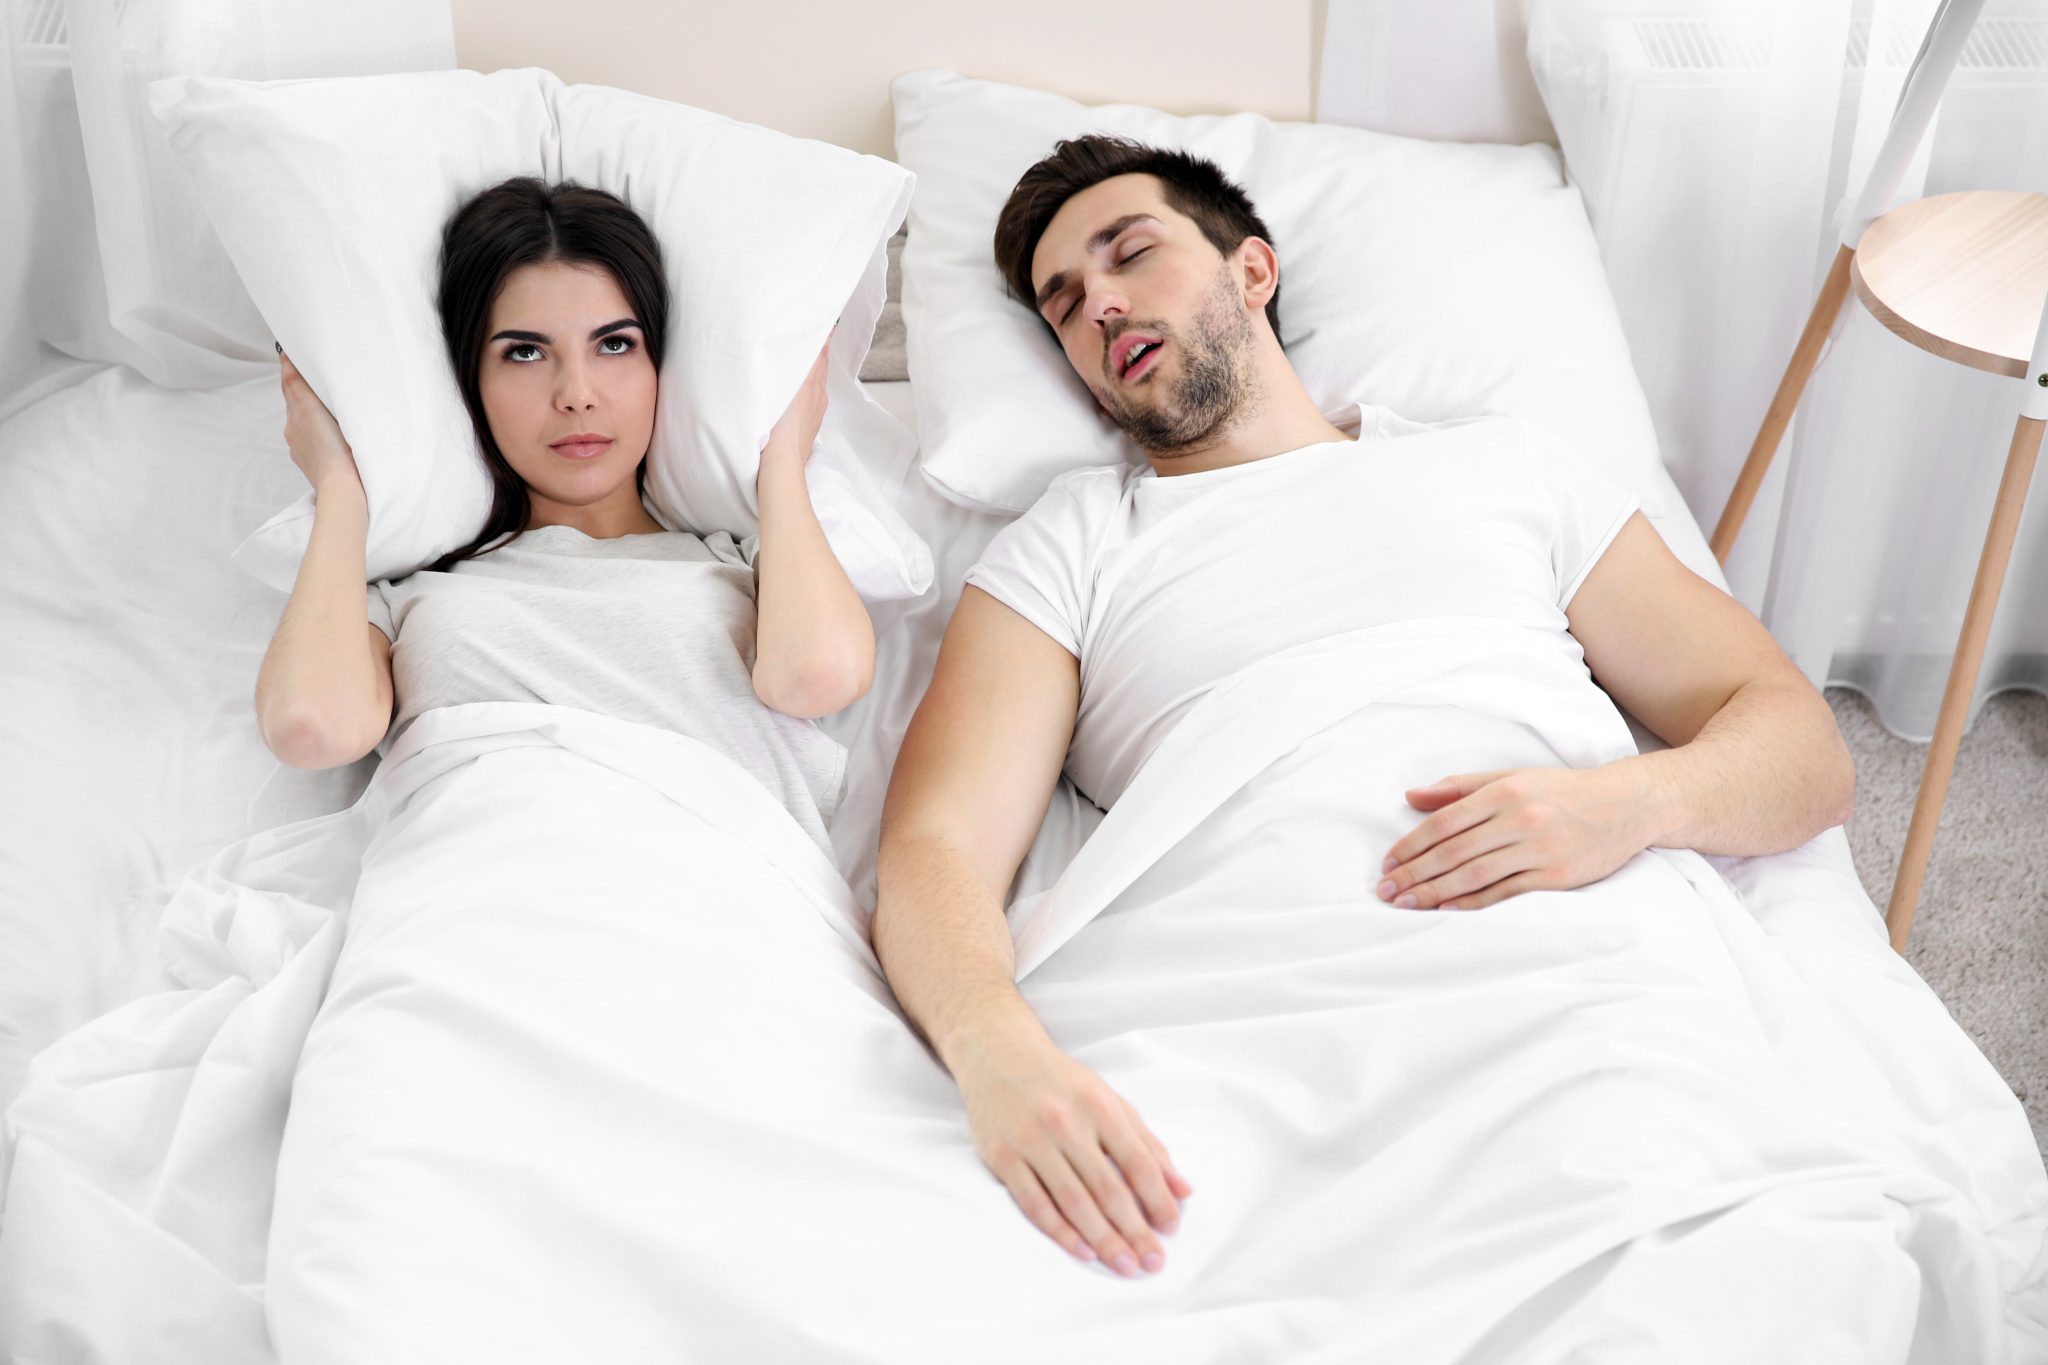 Давлюсь слюной во сне. Храп фото. В спальне храпящие супруги. Сон в разных комнатах. Фотосессия в пижаме на кровати.